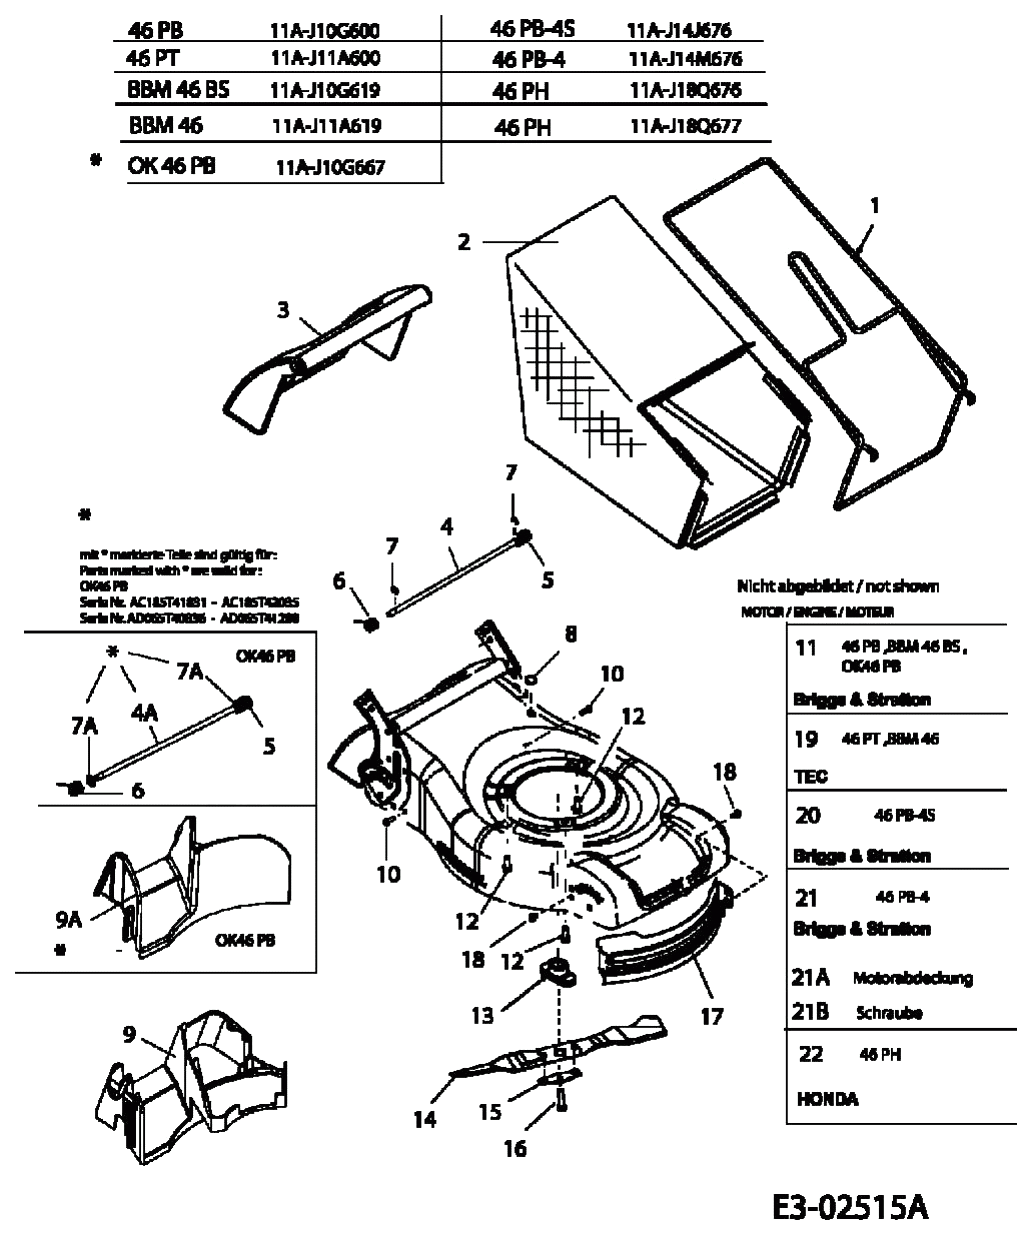 MTD Артикул 11A-J18Q676 (год выпуска 2005). Травосборник, ножи, двигатель